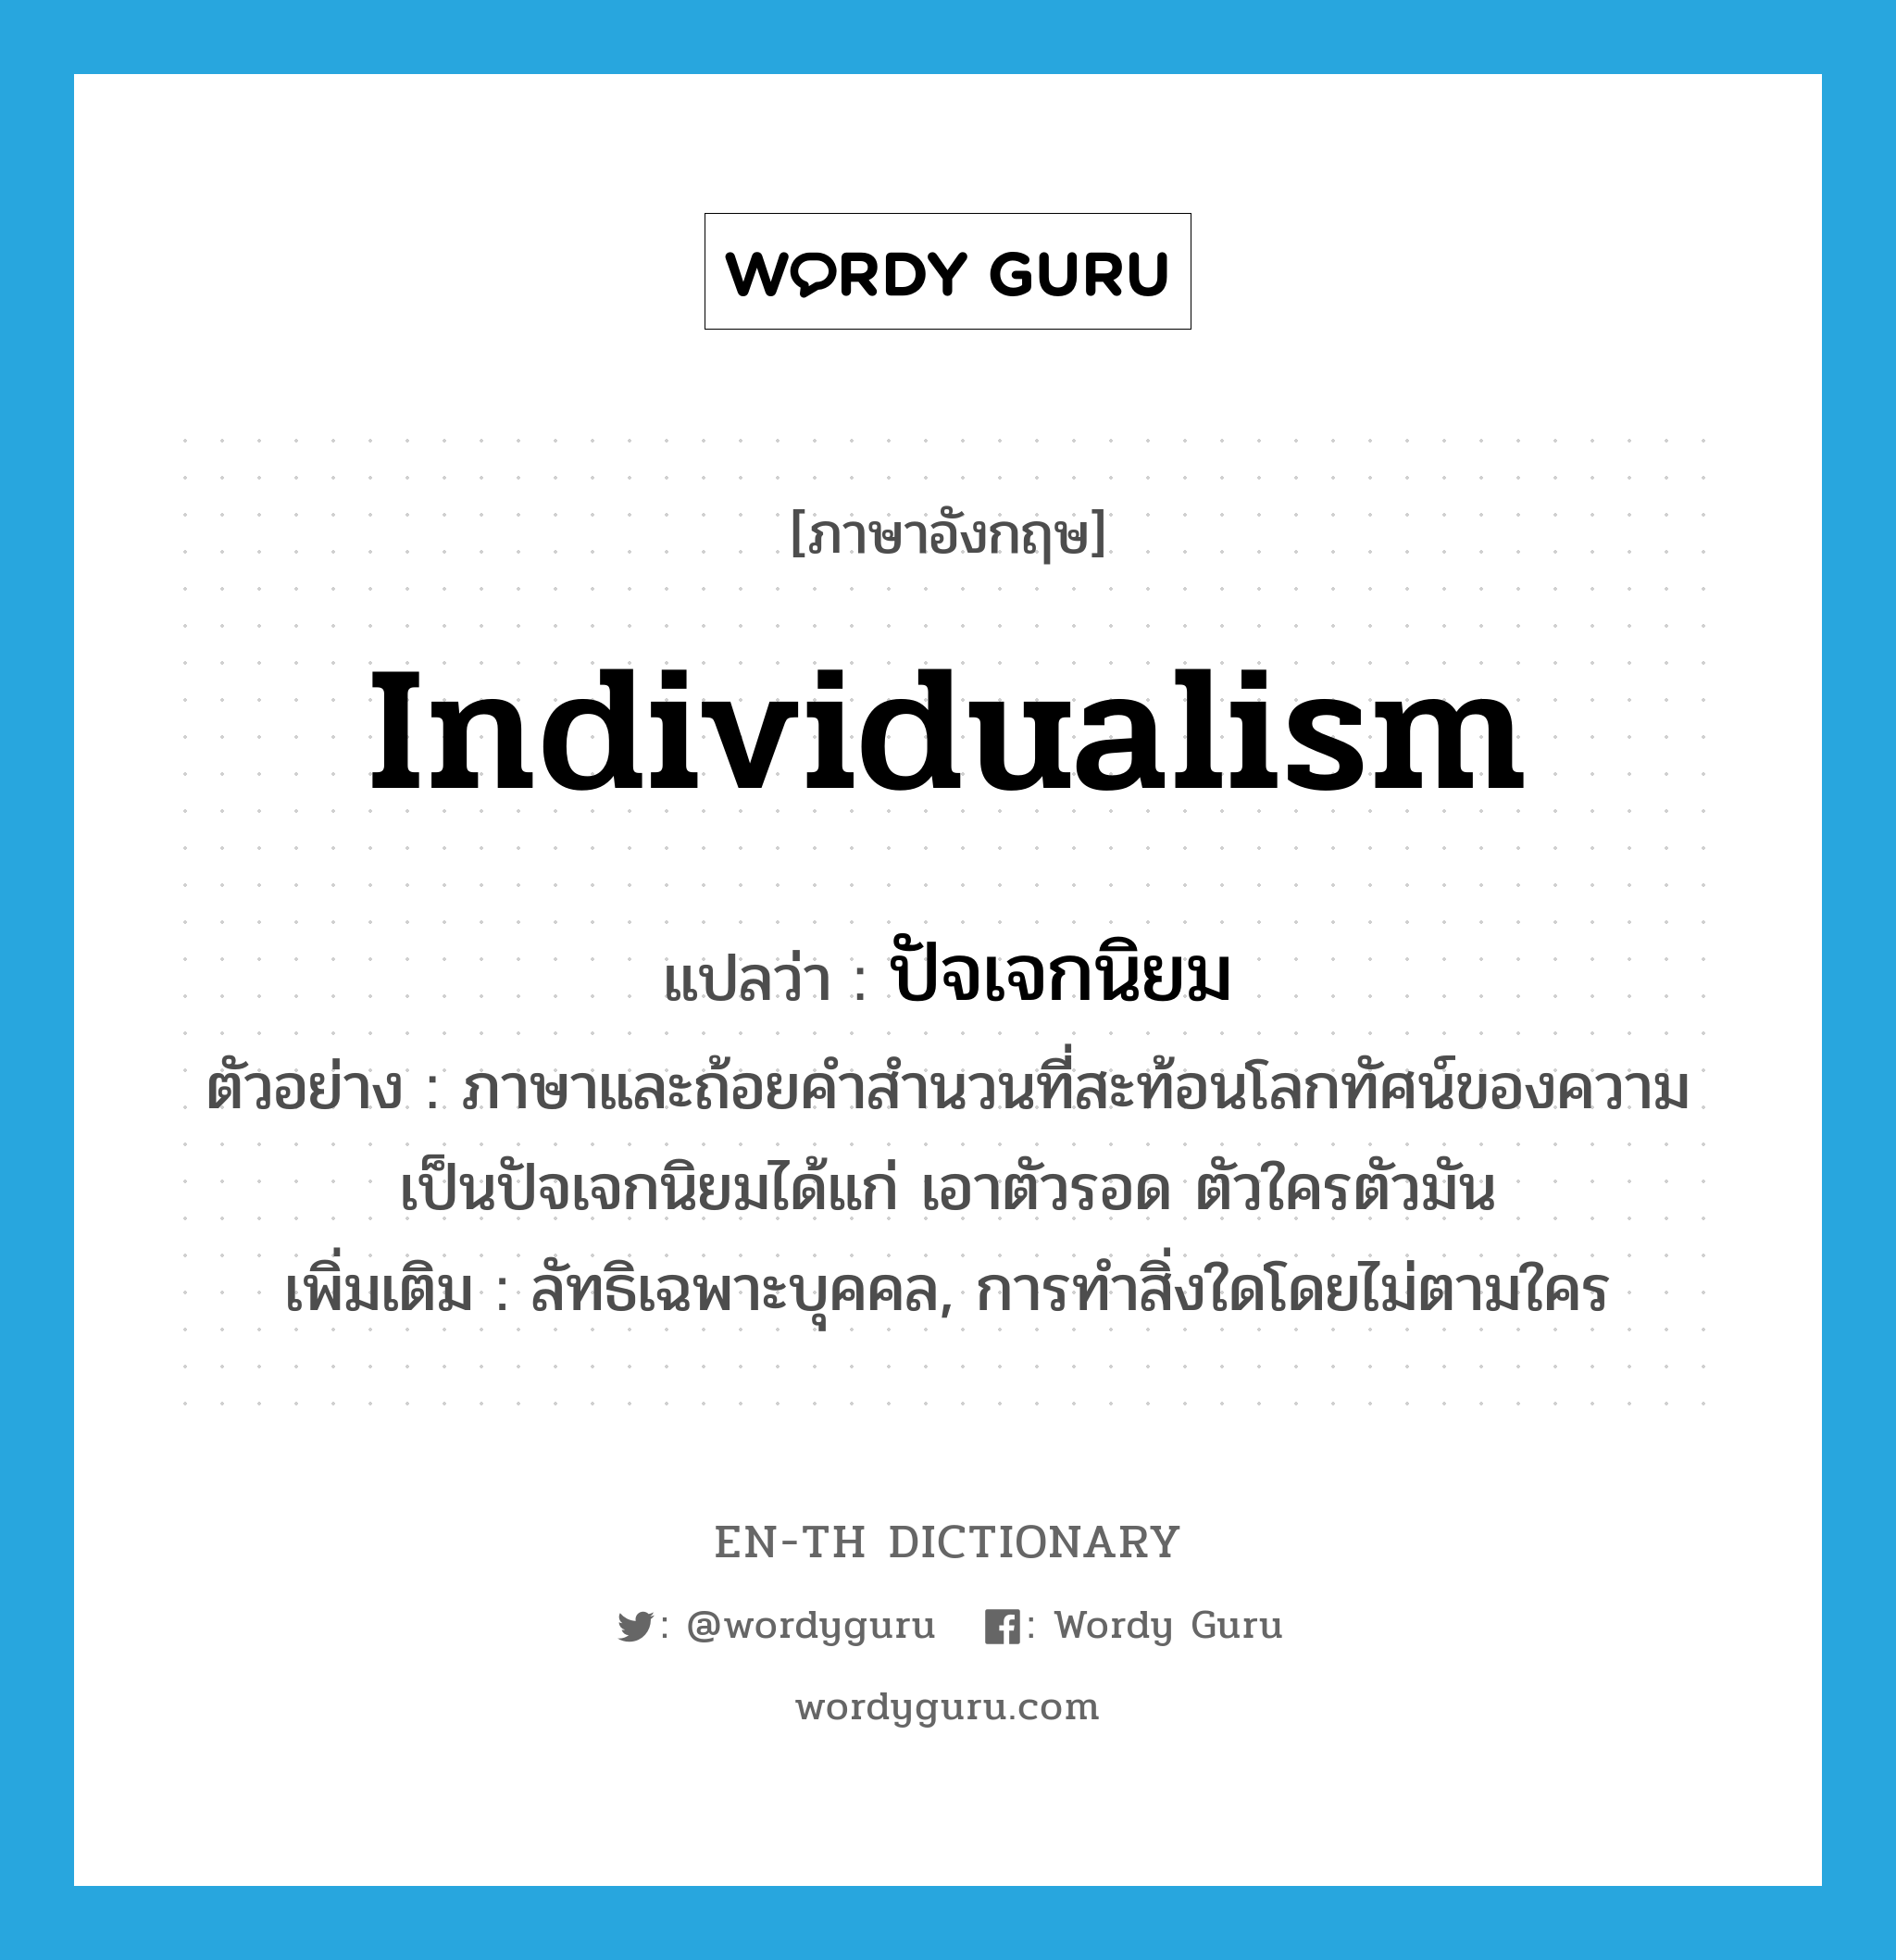 individualism แปลว่า?, คำศัพท์ภาษาอังกฤษ individualism แปลว่า ปัจเจกนิยม ประเภท N ตัวอย่าง ภาษาและถ้อยคำสำนวนที่สะท้อนโลกทัศน์ของความเป็นปัจเจกนิยมได้แก่ เอาตัวรอด ตัวใครตัวมัน เพิ่มเติม ลัทธิเฉพาะบุคคล, การทำสิ่งใดโดยไม่ตามใคร หมวด N